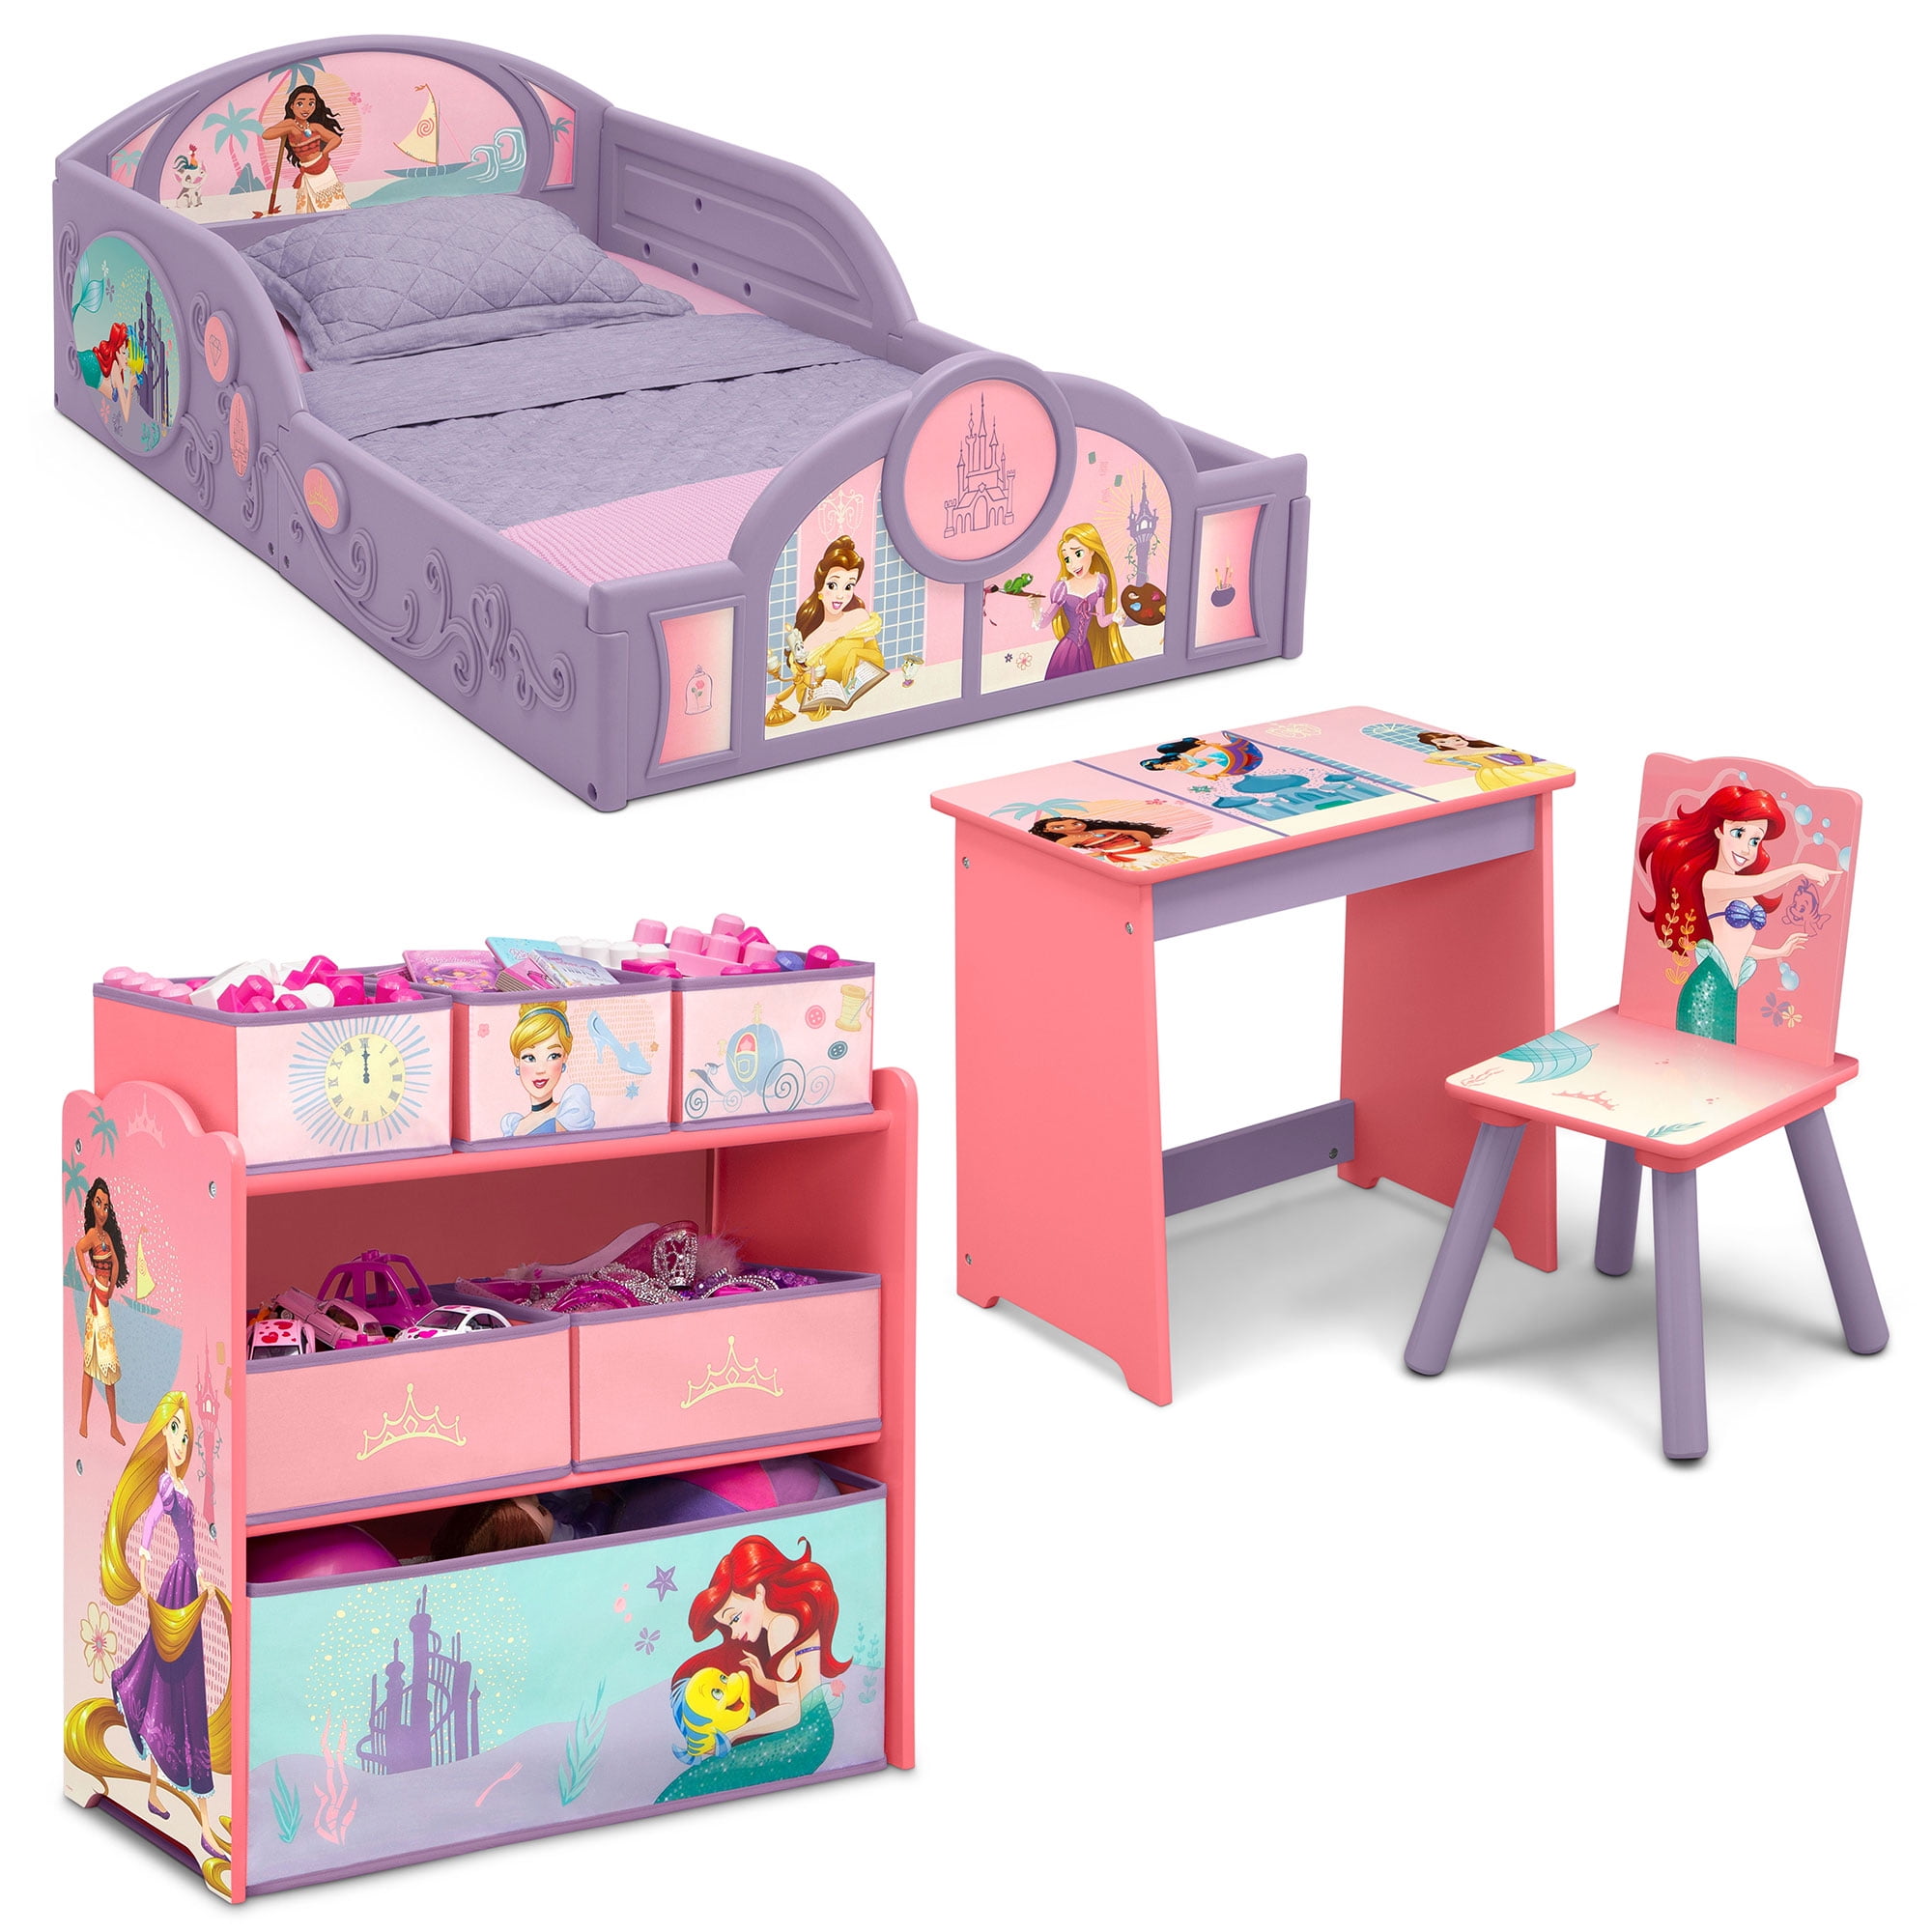 Disney Princess 4 Piece Room In A Box, Disney Princess Bunk Bed Rooms To Go